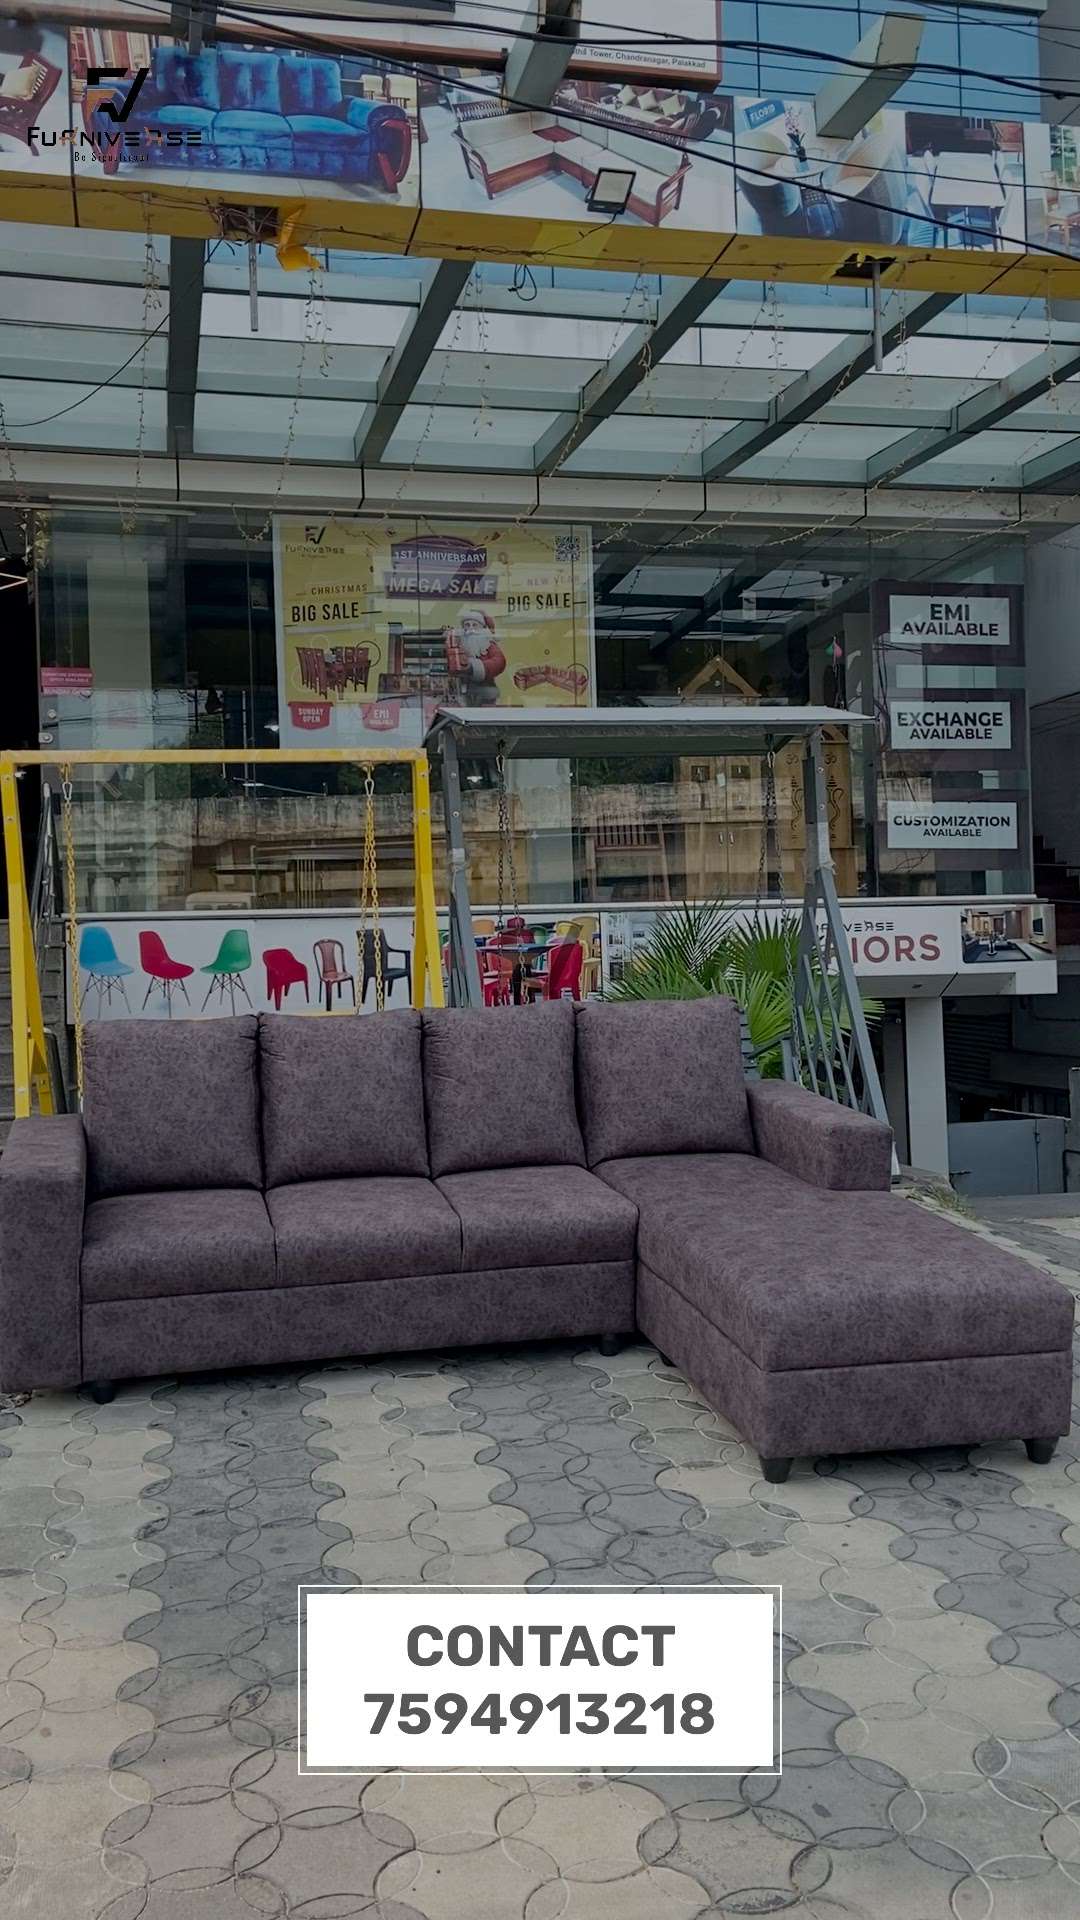 3+Diwan sofa set
7594913218
 #furnitures  #furniverse  #furniversepalakkad  #HomeDecor  #customisedfurniture  #Palakkad  #kerala